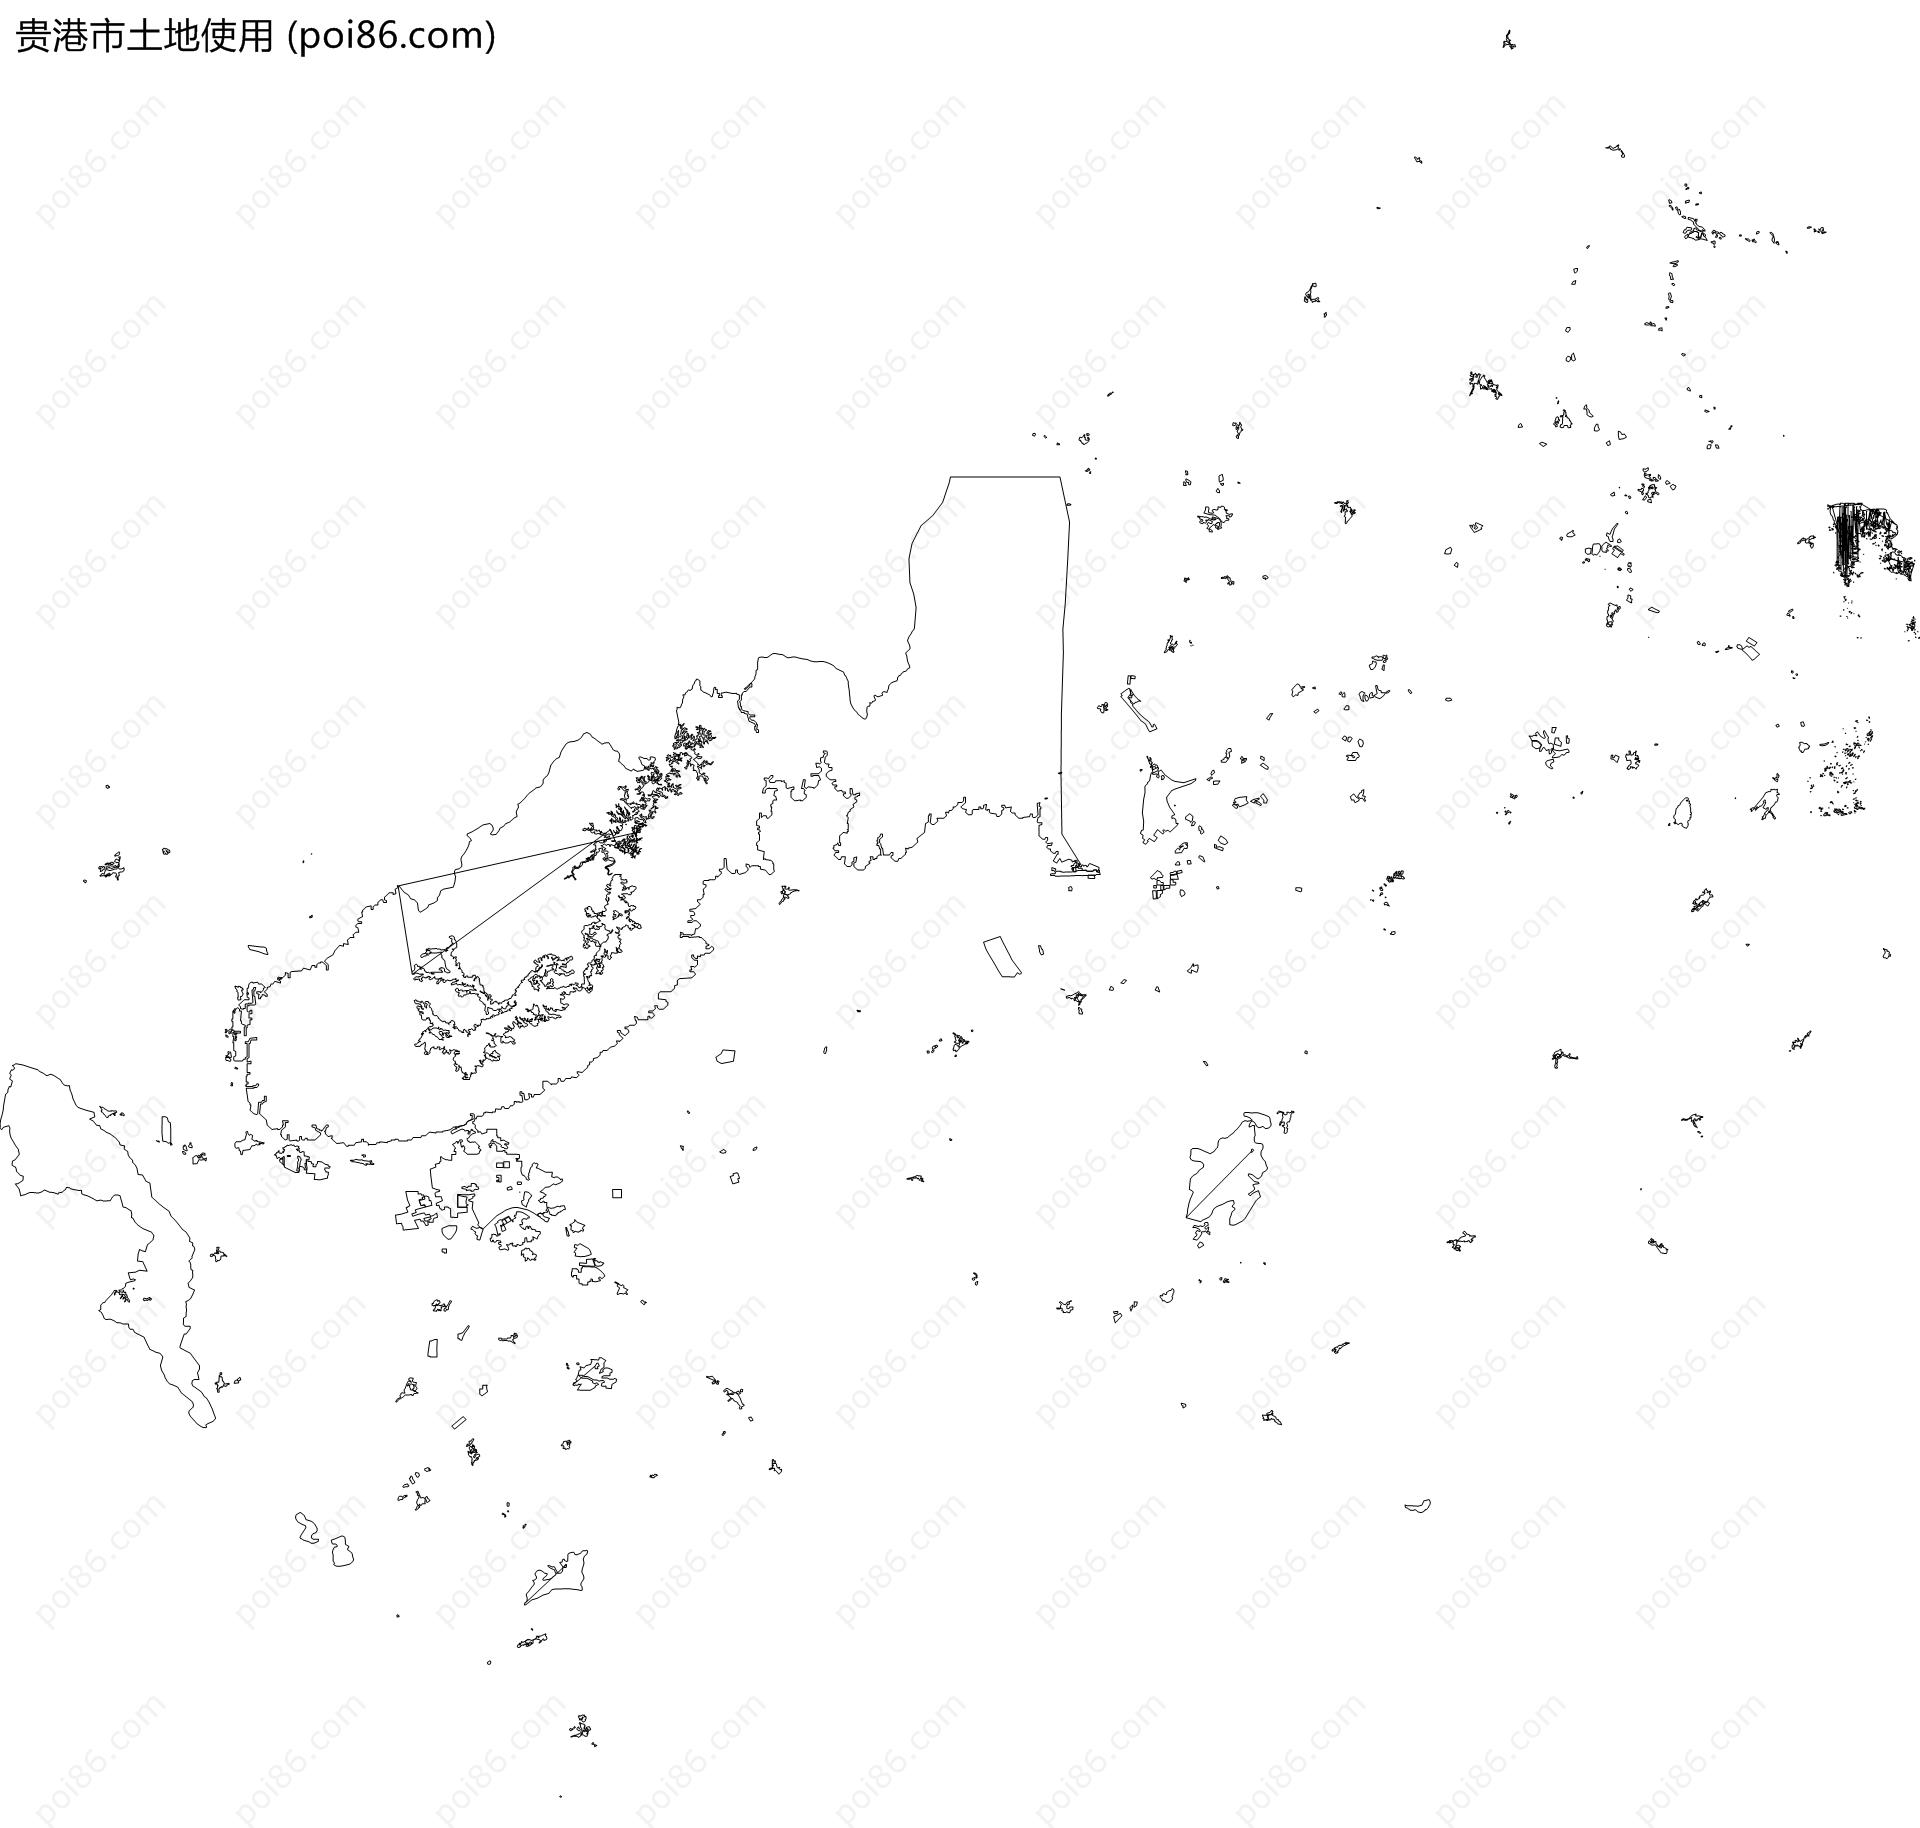 贵港市土地使用地图